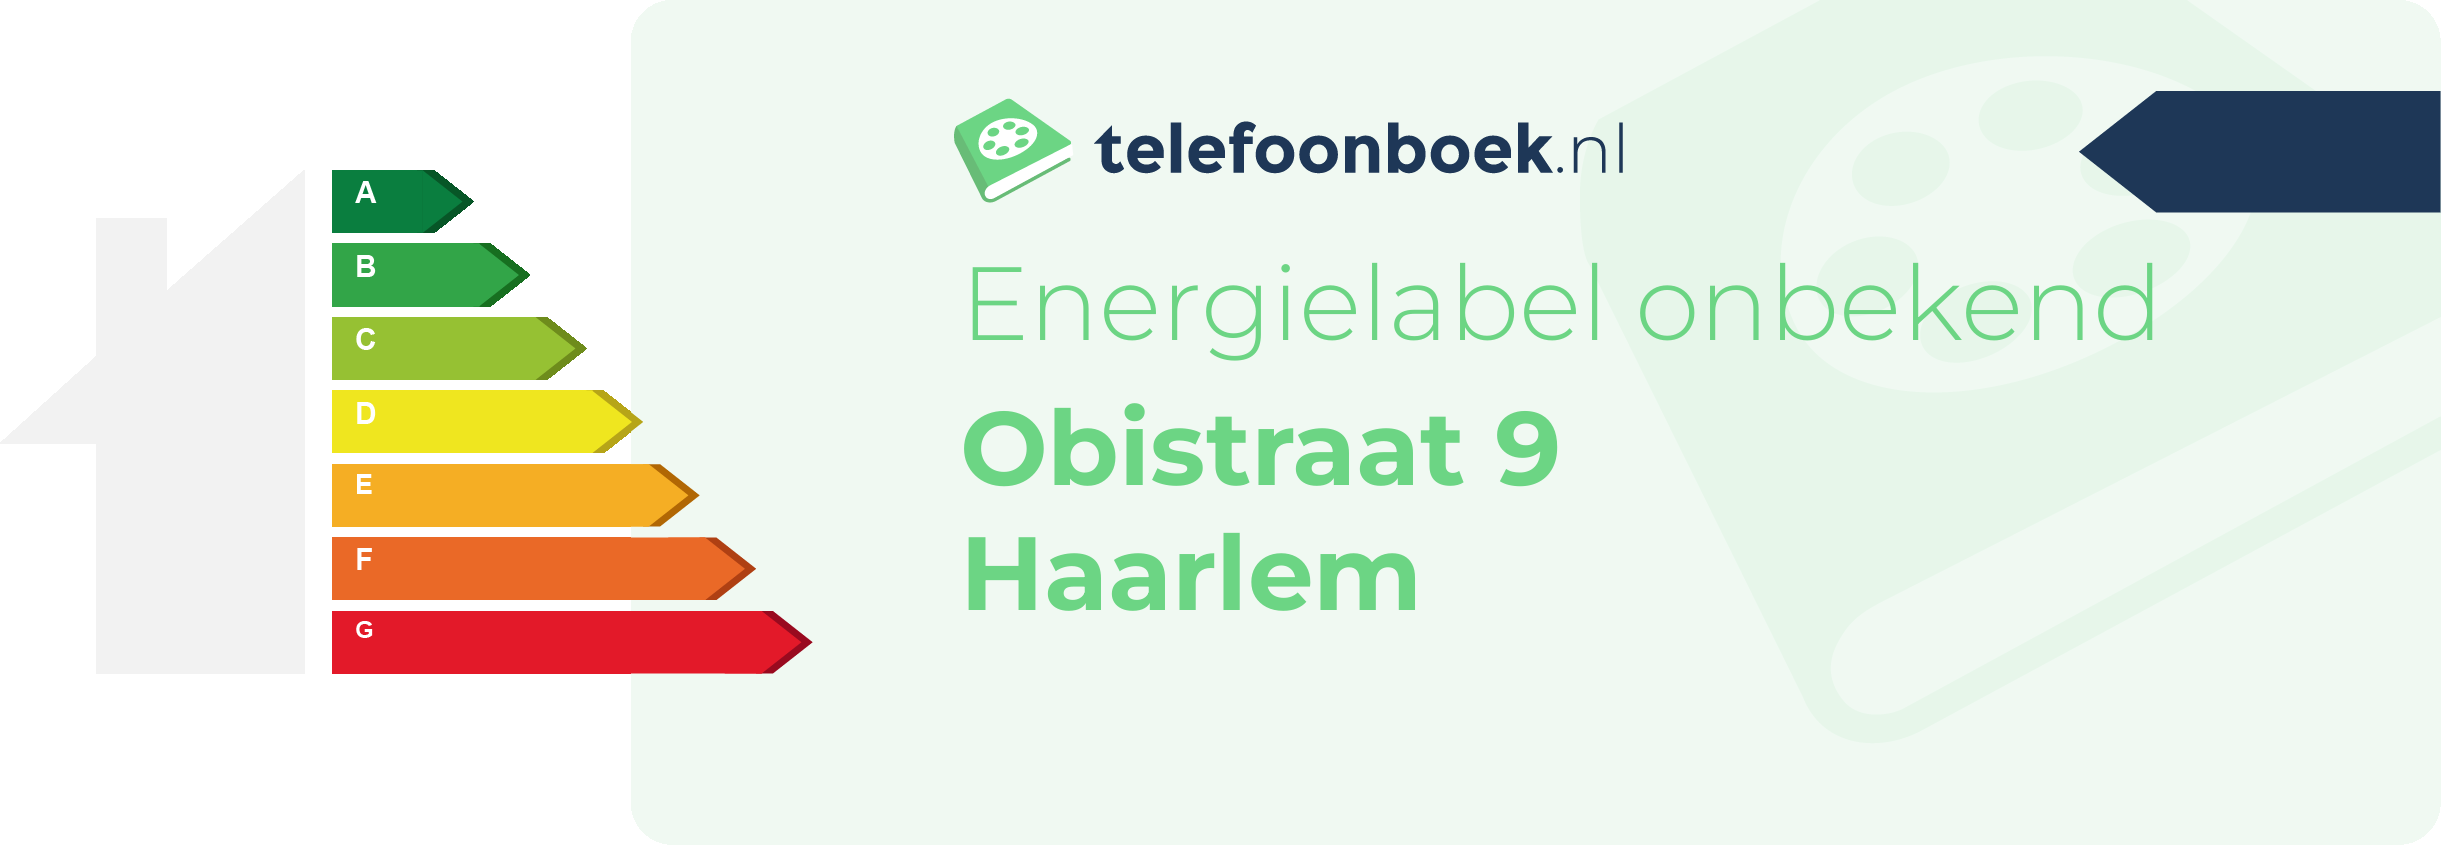 Energielabel Obistraat 9 Haarlem